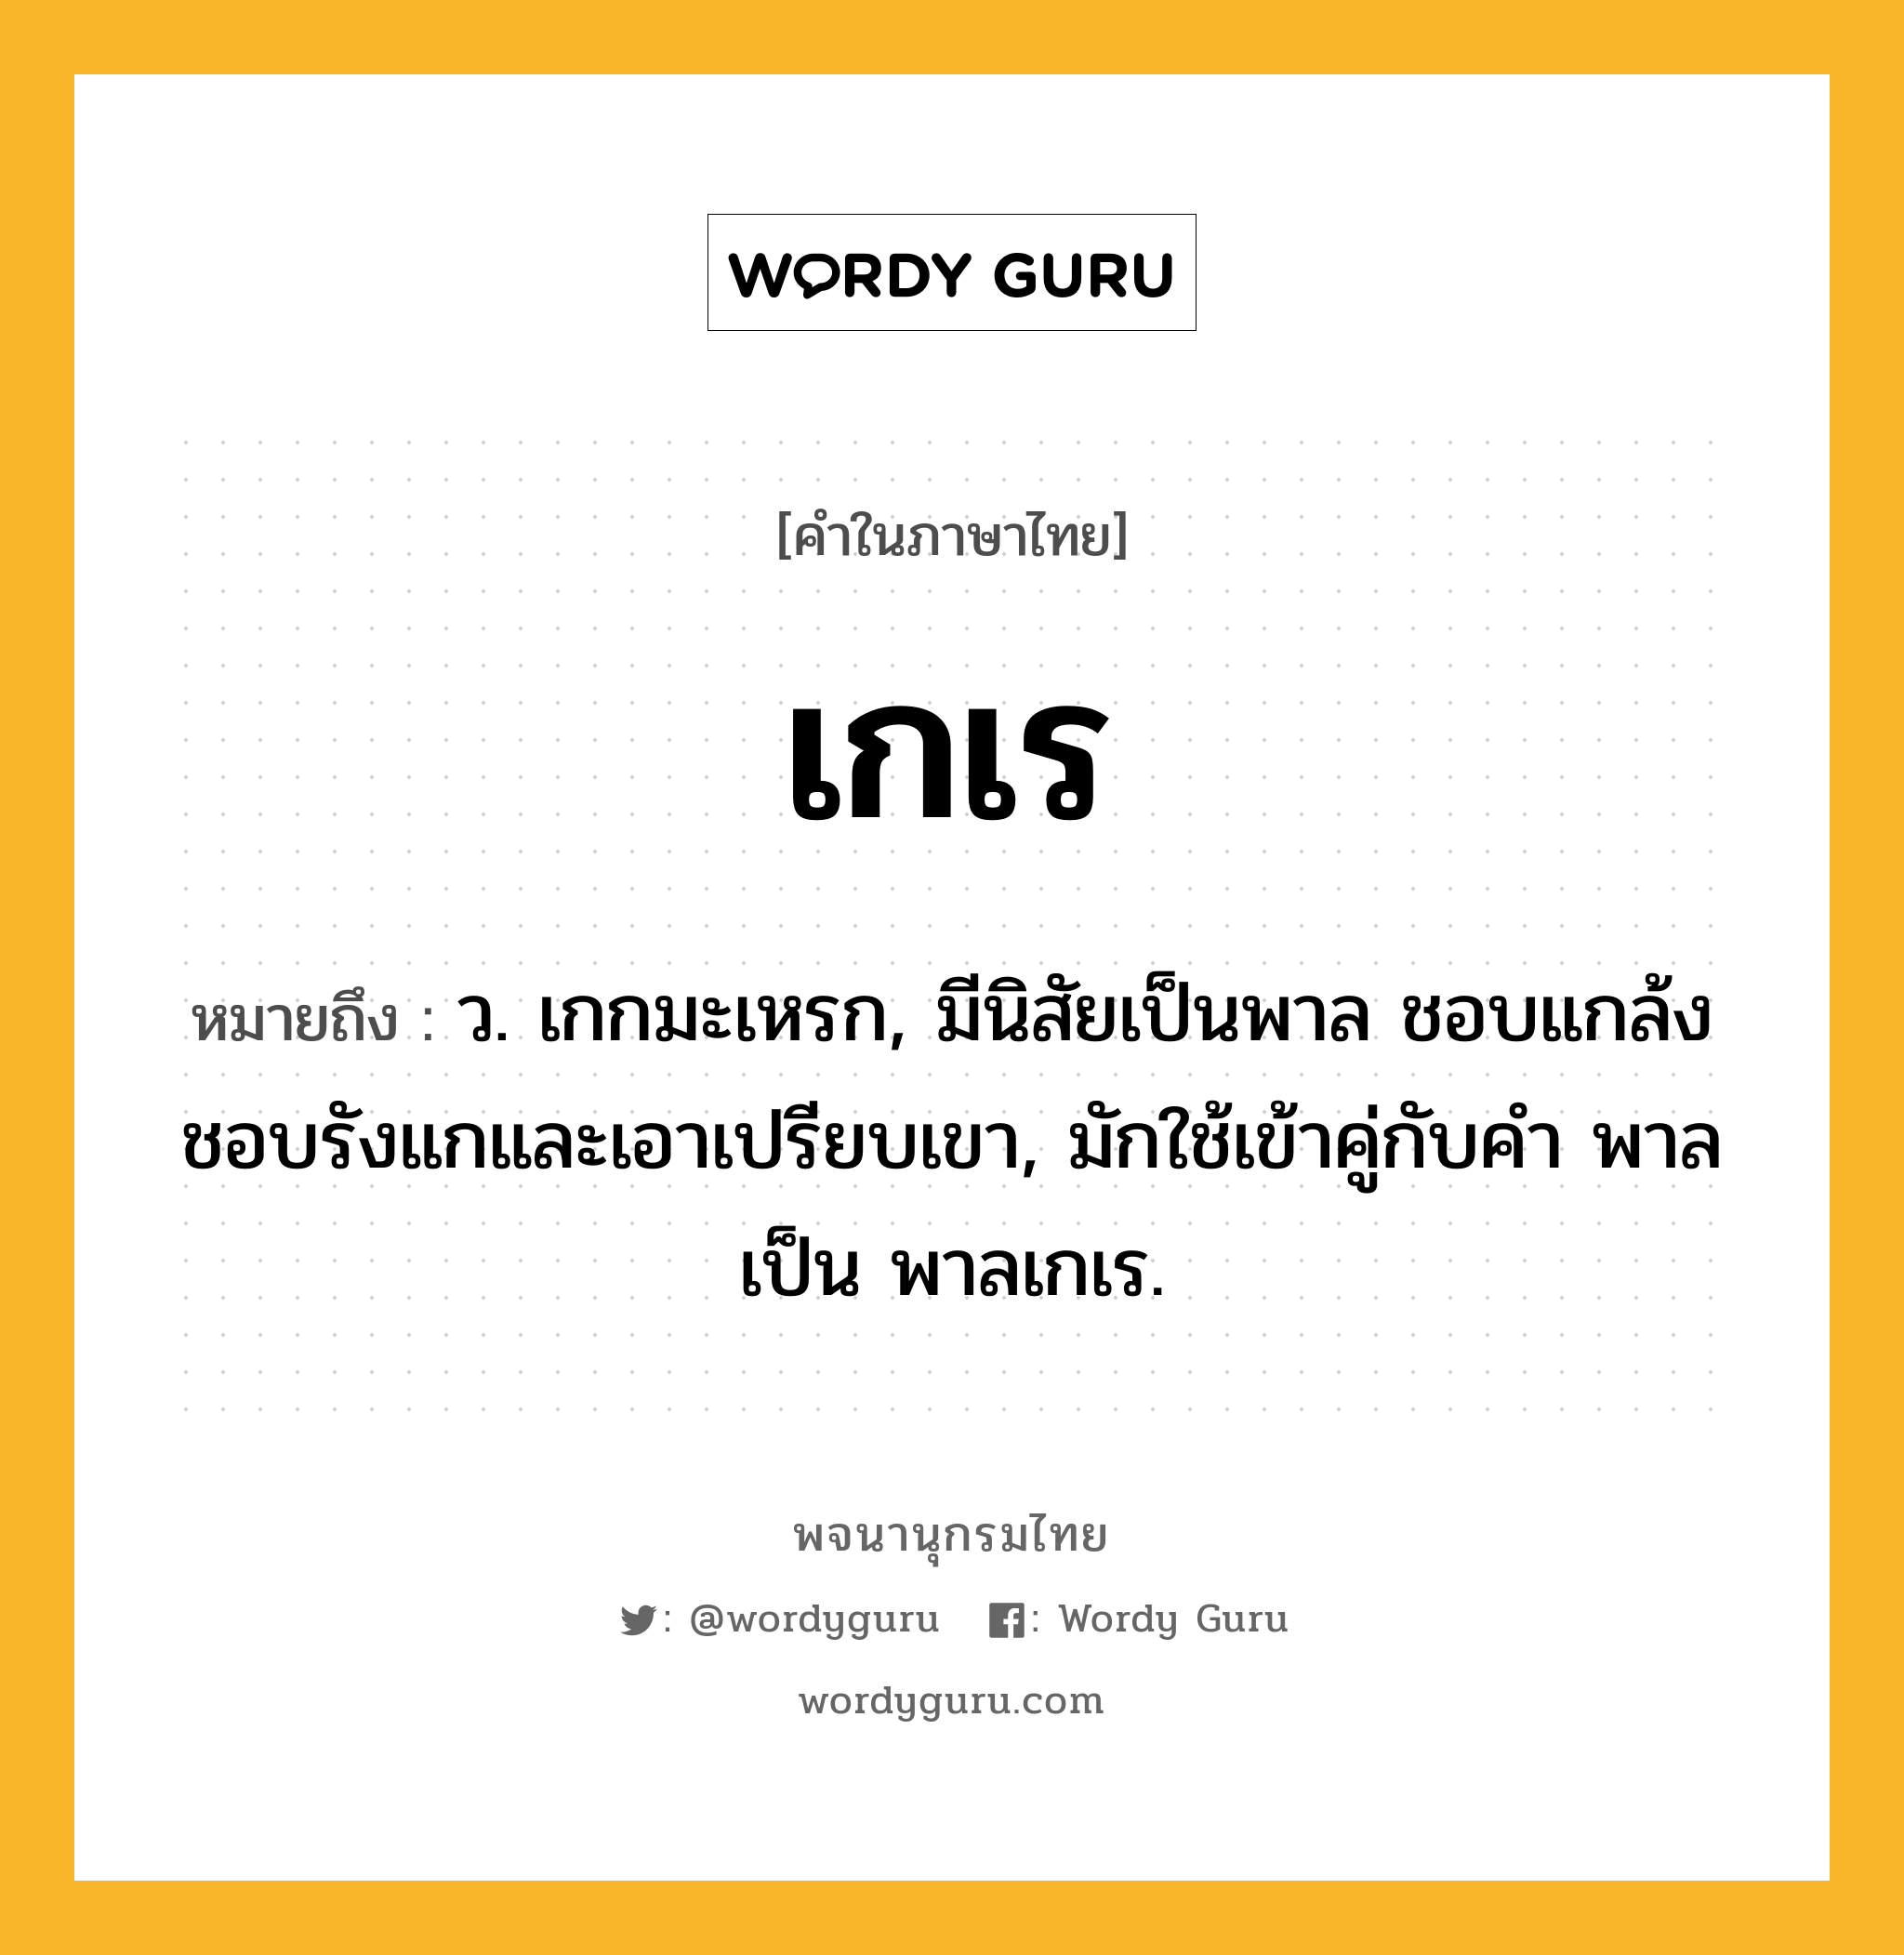 เกเร หมายถึงอะไร?, คำในภาษาไทย เกเร หมายถึง ว. เกกมะเหรก, มีนิสัยเป็นพาล ชอบแกล้งชอบรังแกและเอาเปรียบเขา, มักใช้เข้าคู่กับคํา พาล เป็น พาลเกเร.